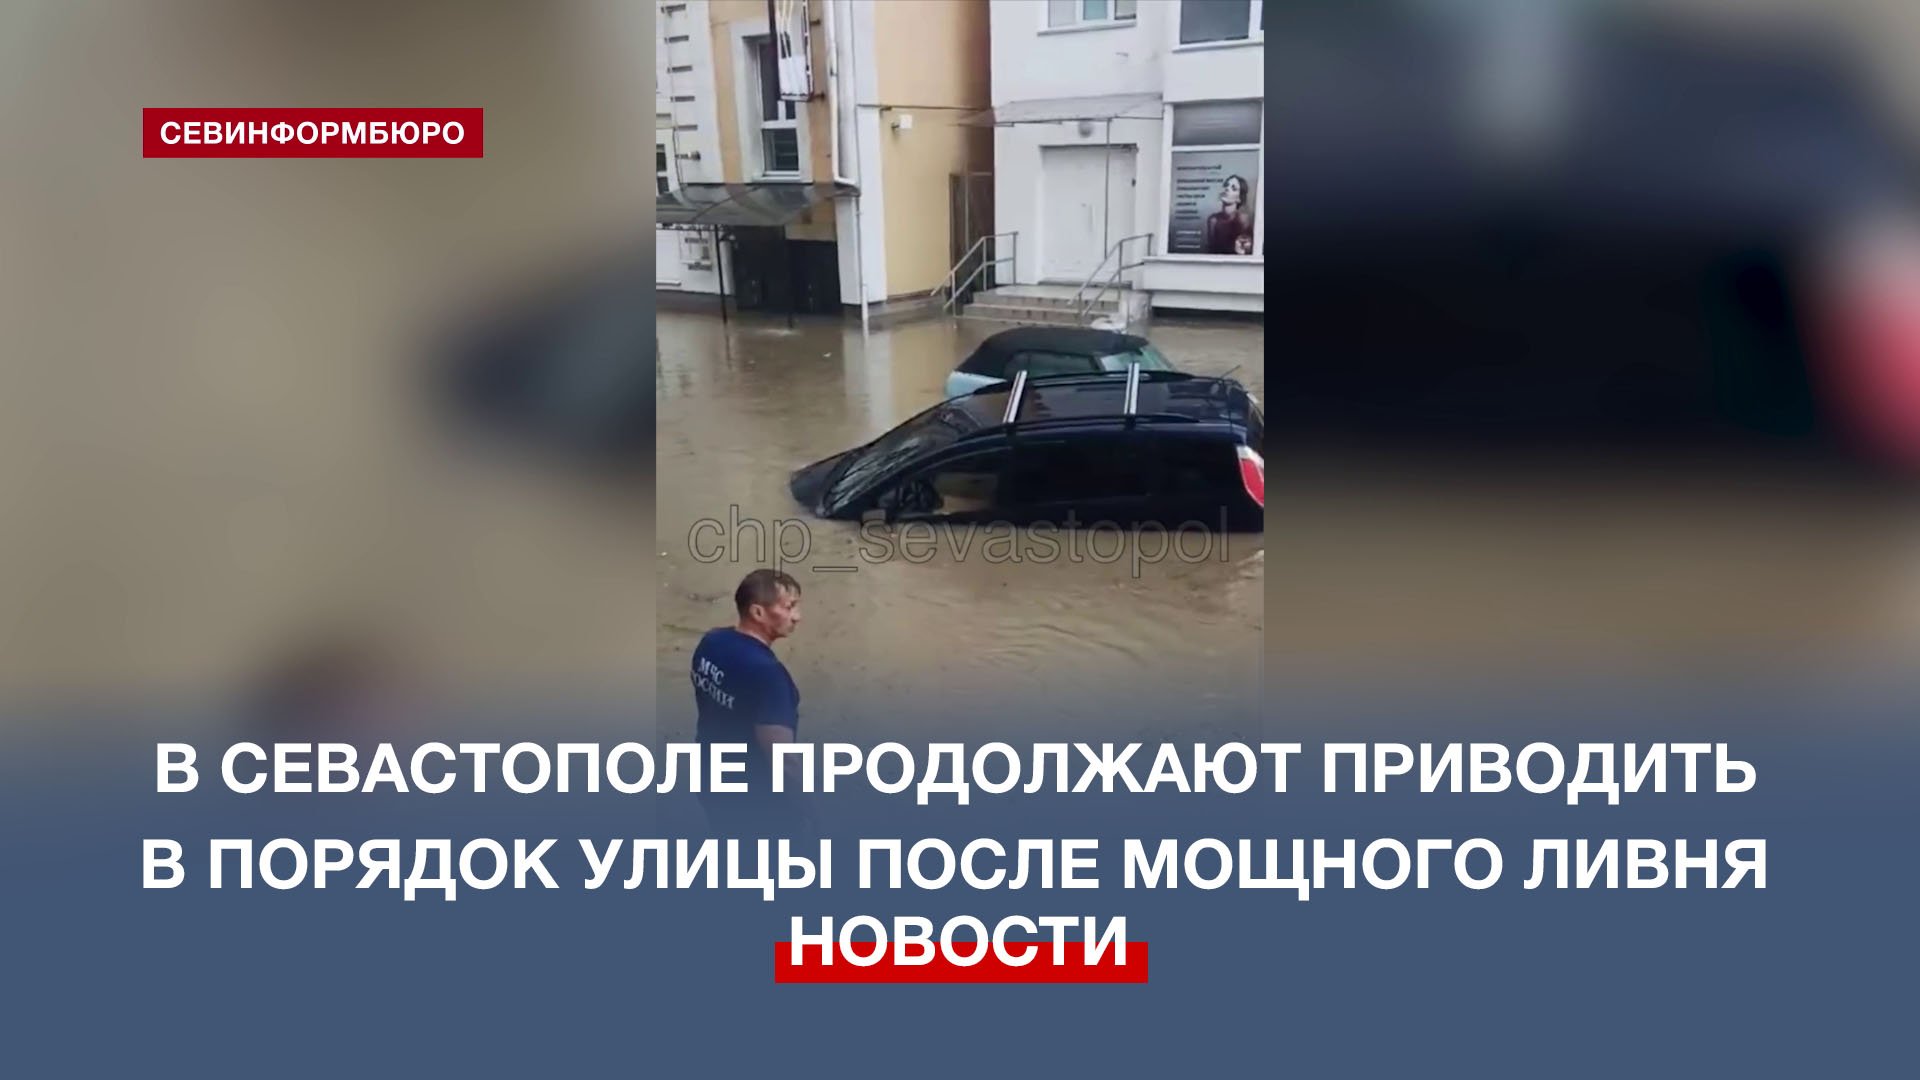 В Севастополе продолжают приводить в порядок улицы после мощного ливня